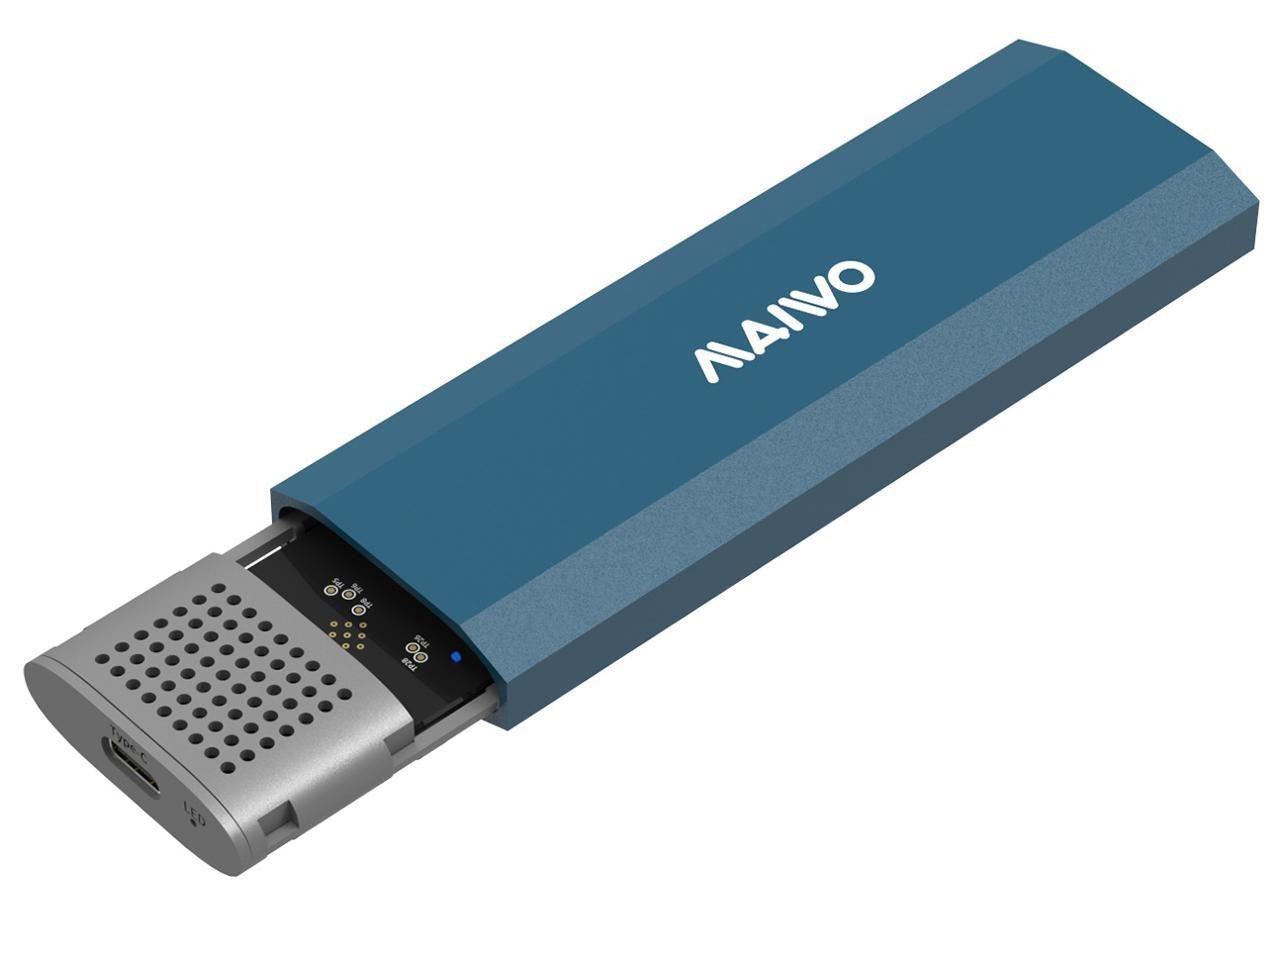 Maiwo K1690 M.2 SATA & NVMe SSD-kombinasjon for USB3.2 Gen2 10 Gbps eksternt deksel skruløs design aluminium